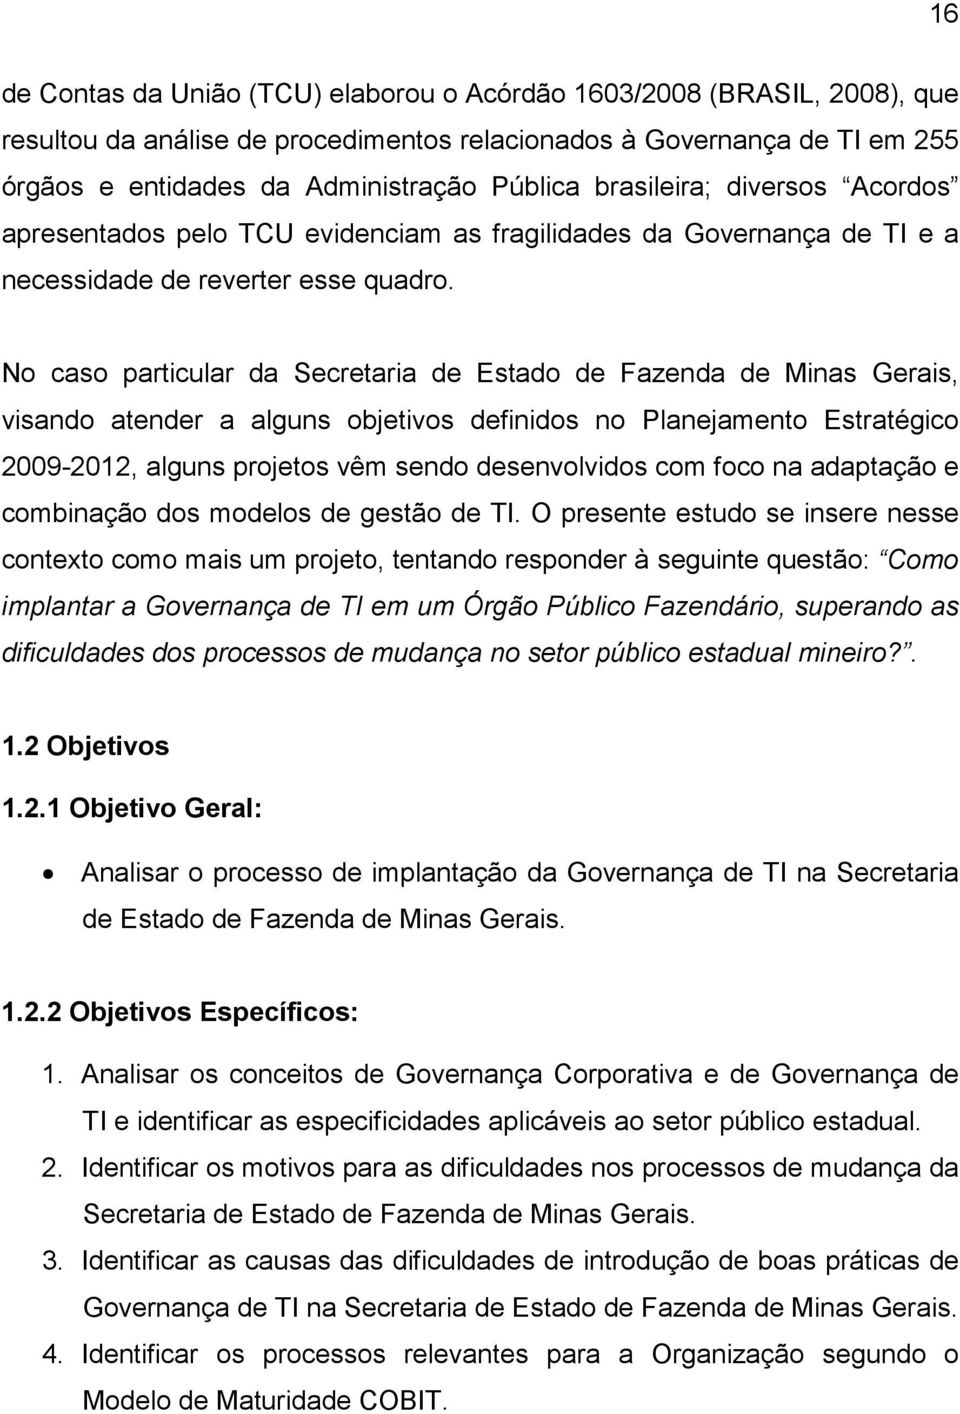 No caso particular da Secretaria de Estado de Fazenda de Minas Gerais, visando atender a alguns objetivos definidos no Planejamento Estratégico 2009-2012, alguns projetos vêm sendo desenvolvidos com